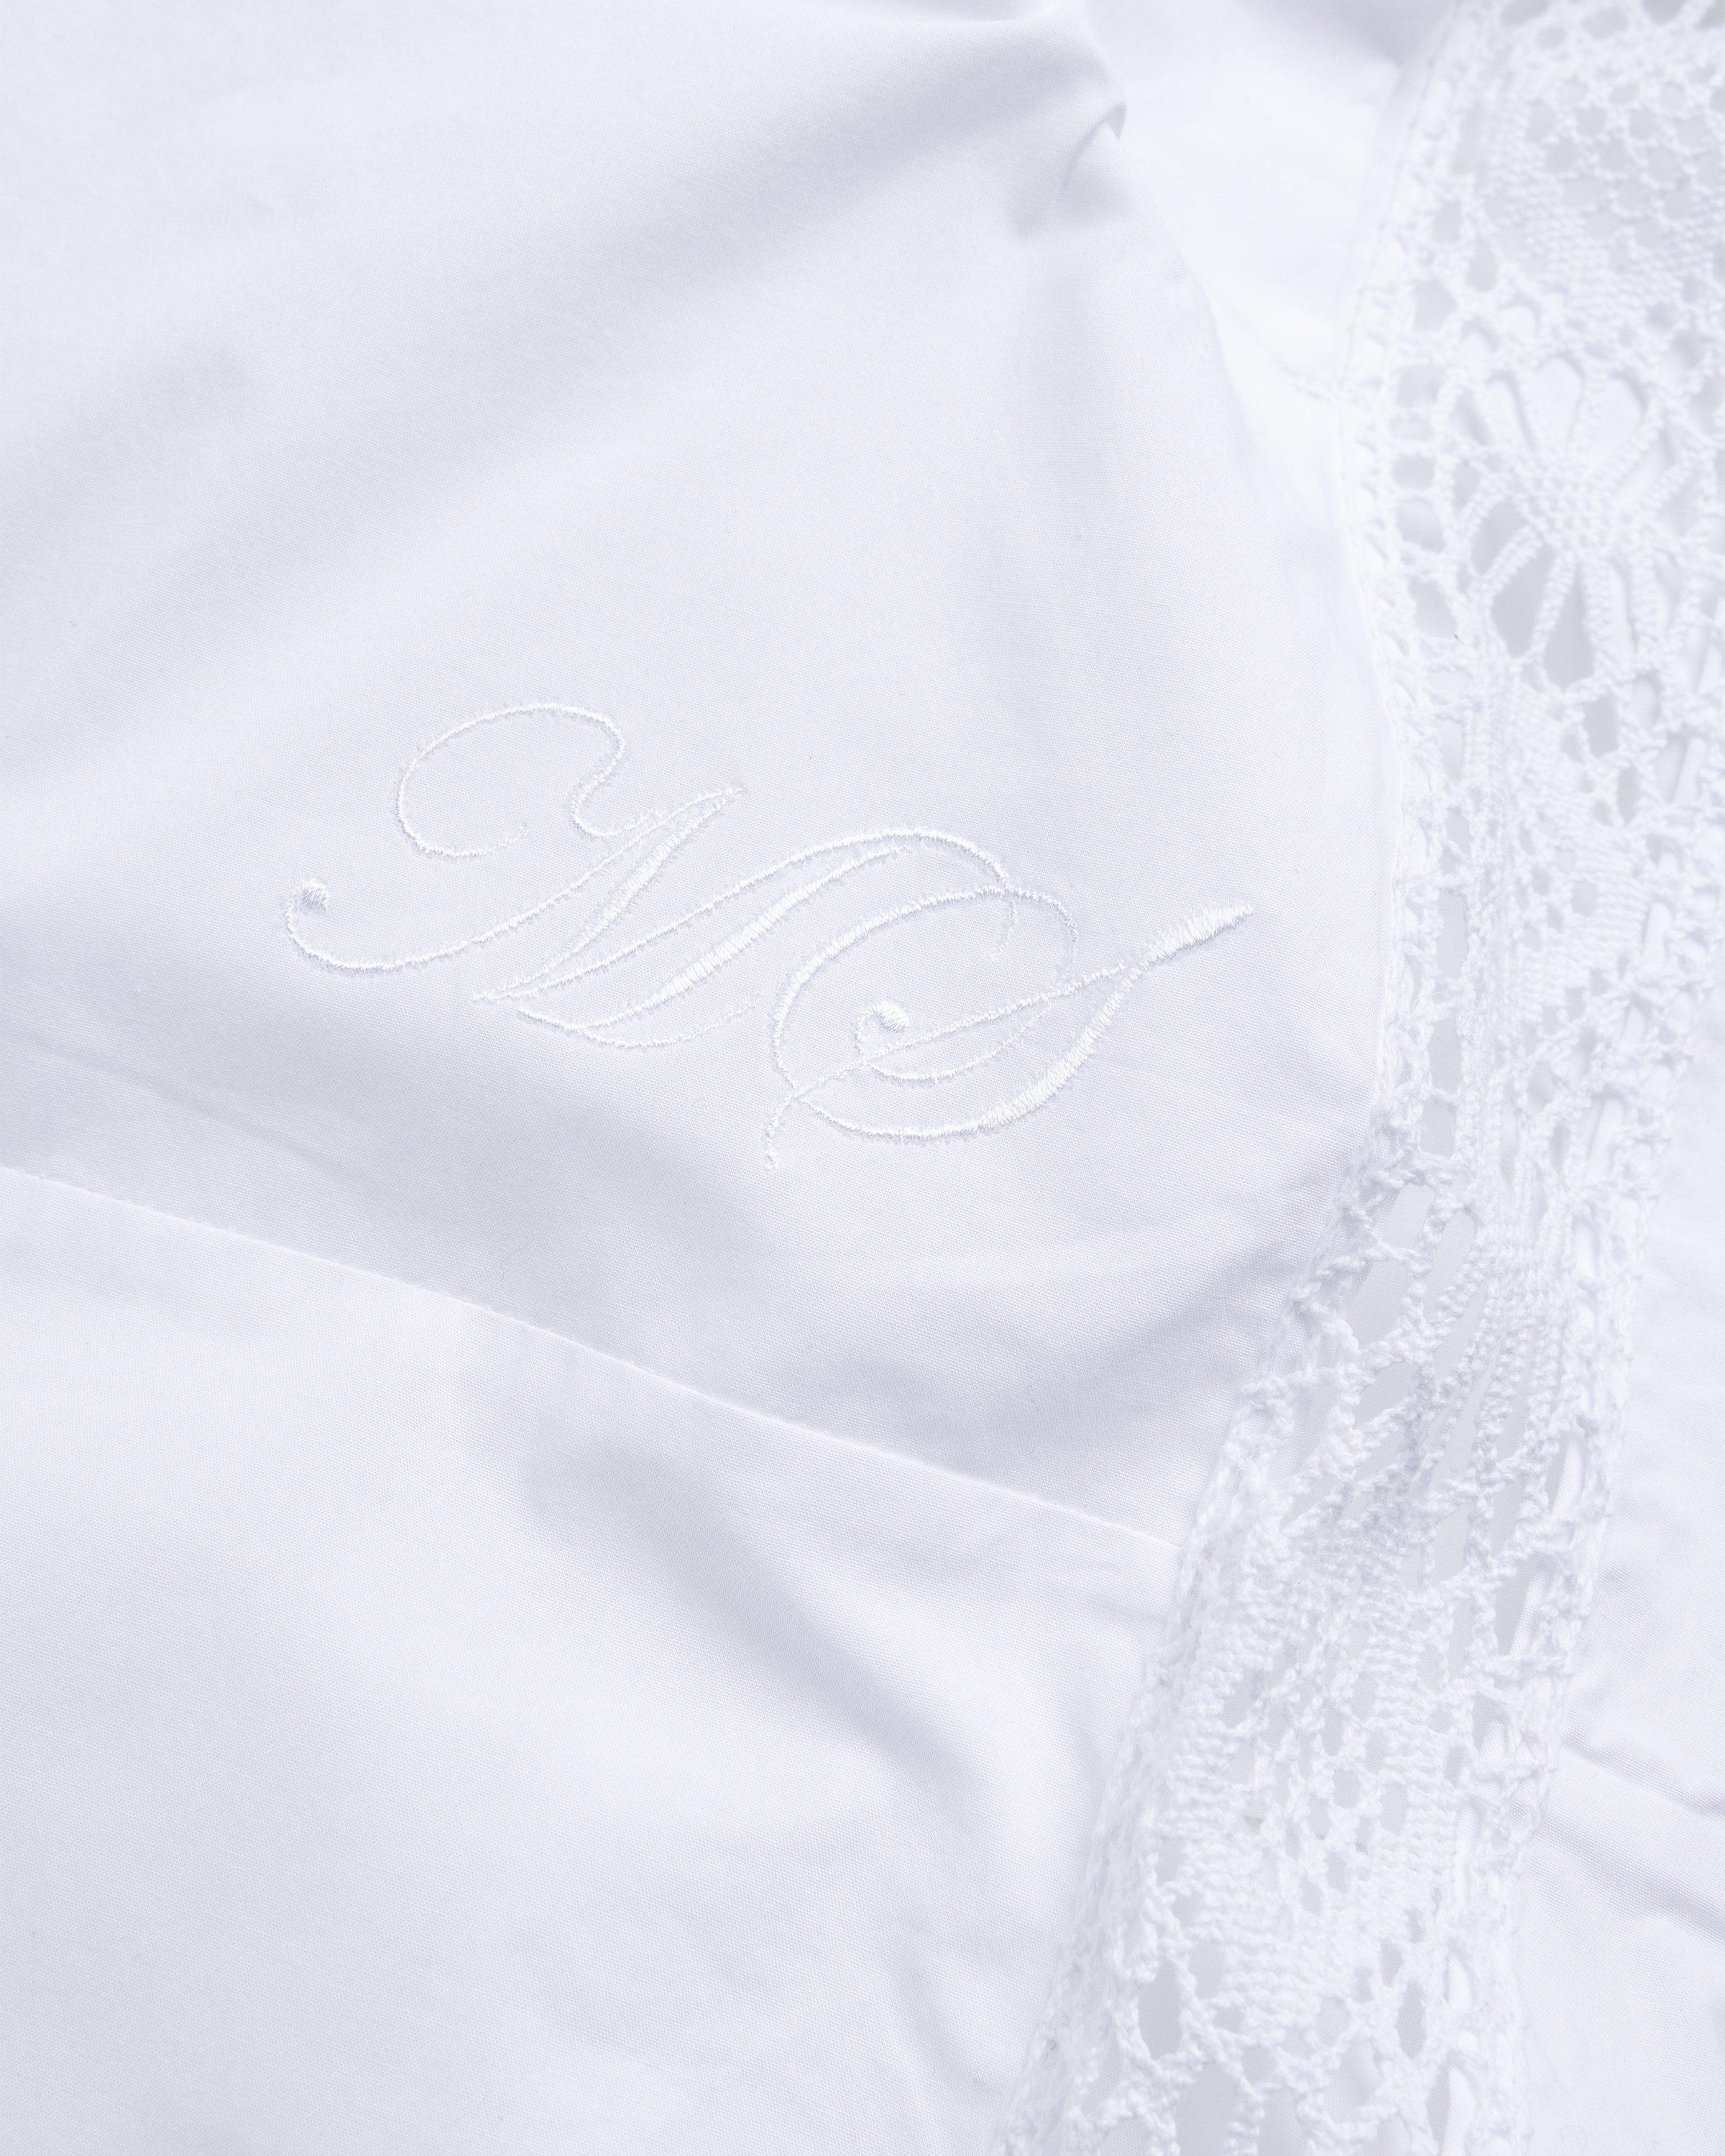 Marine Serre - Regenerated Household Linen Pajama Pants White - Clothing - White - Image 6